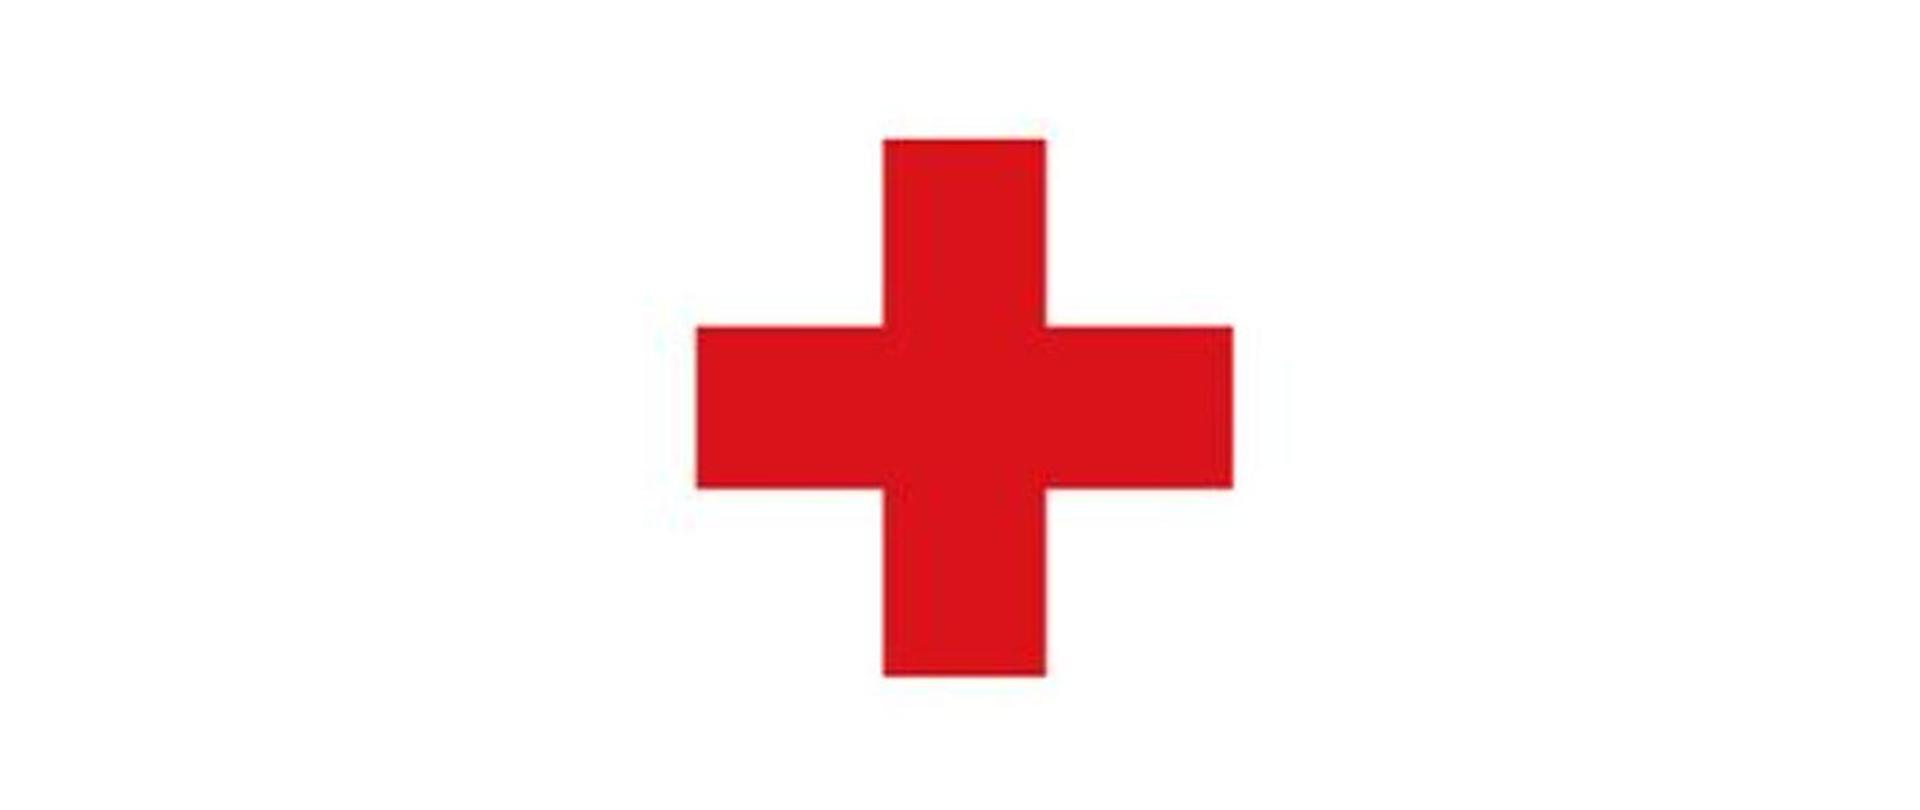 Zdjęcie przedstawia znak Czerwonego Krzyża